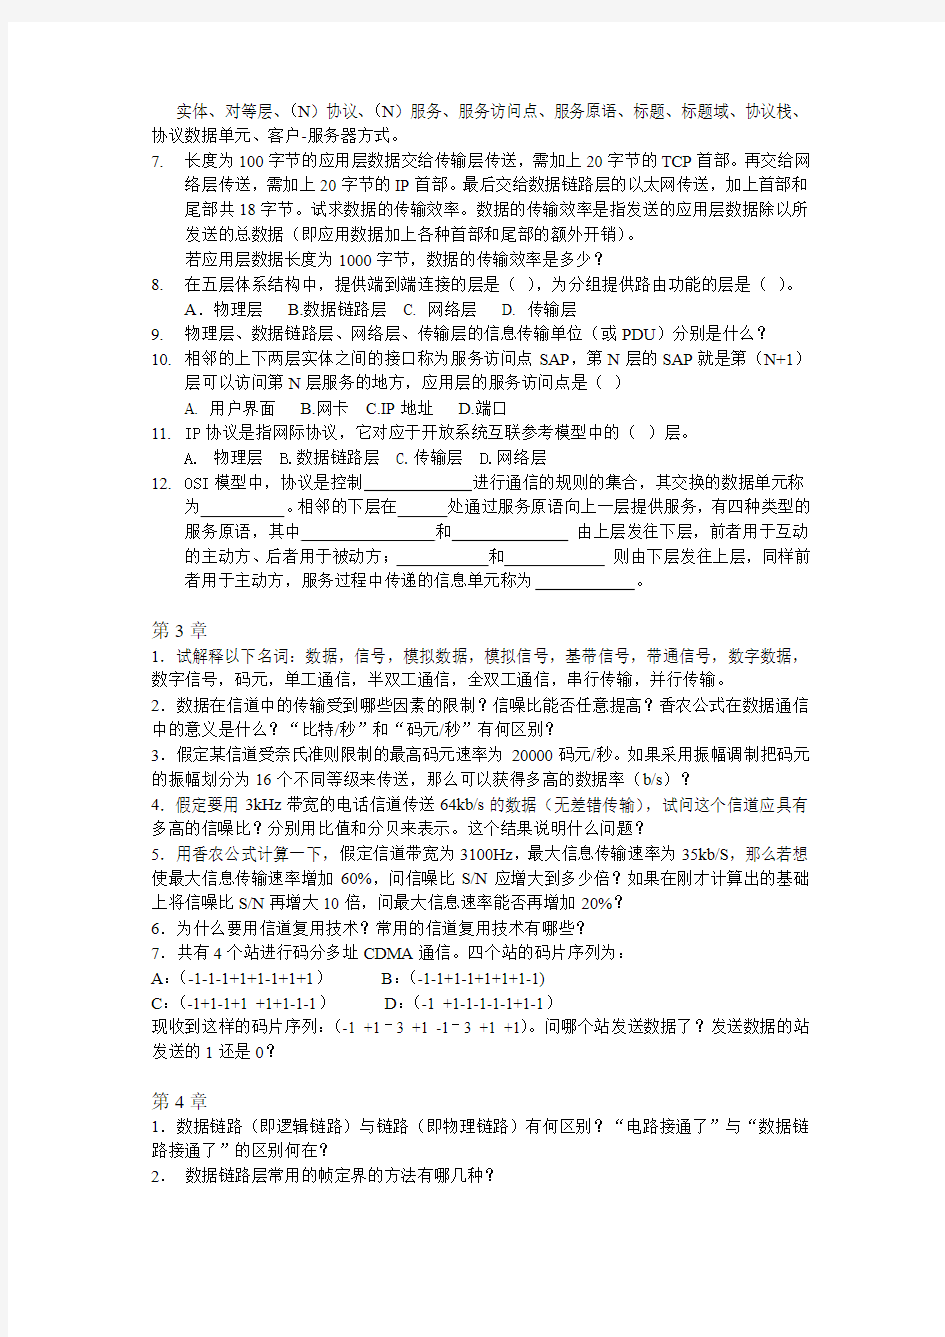 华北电力大学 网络体系结构作业题2014